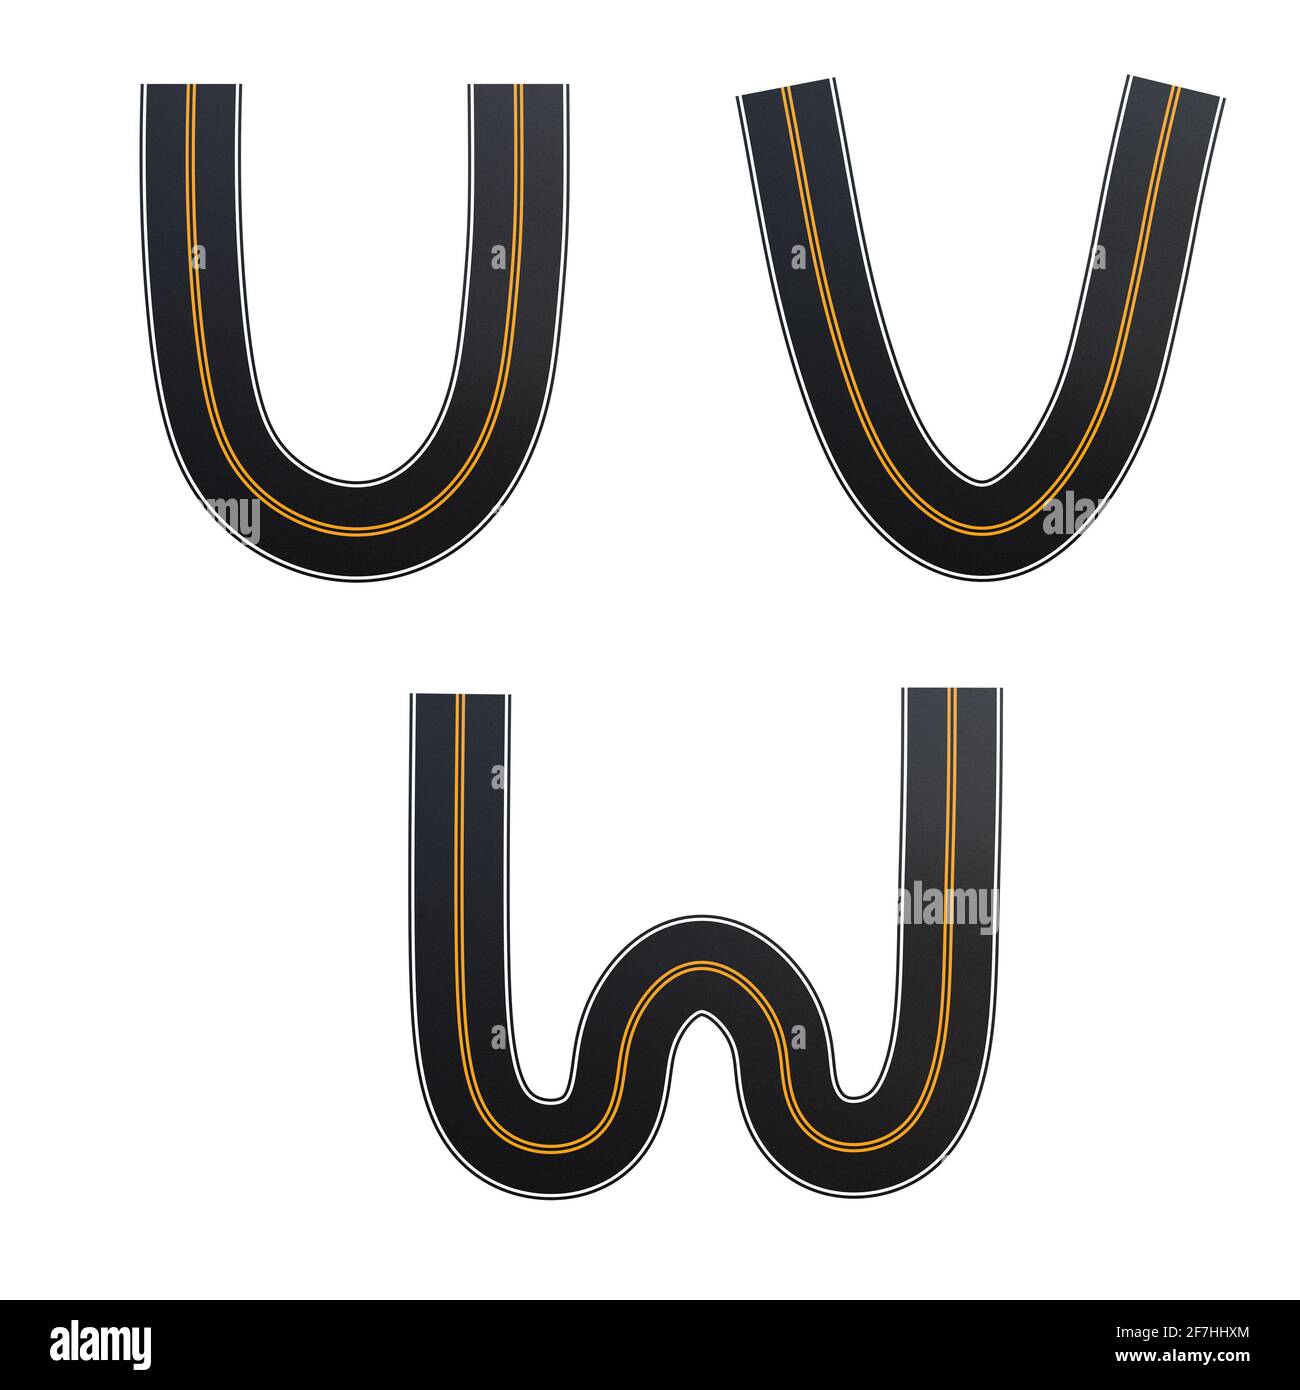 Rappresentazione 3D dell'alfabeto delle strade asfaltate - lettere U-W. Foto Stock